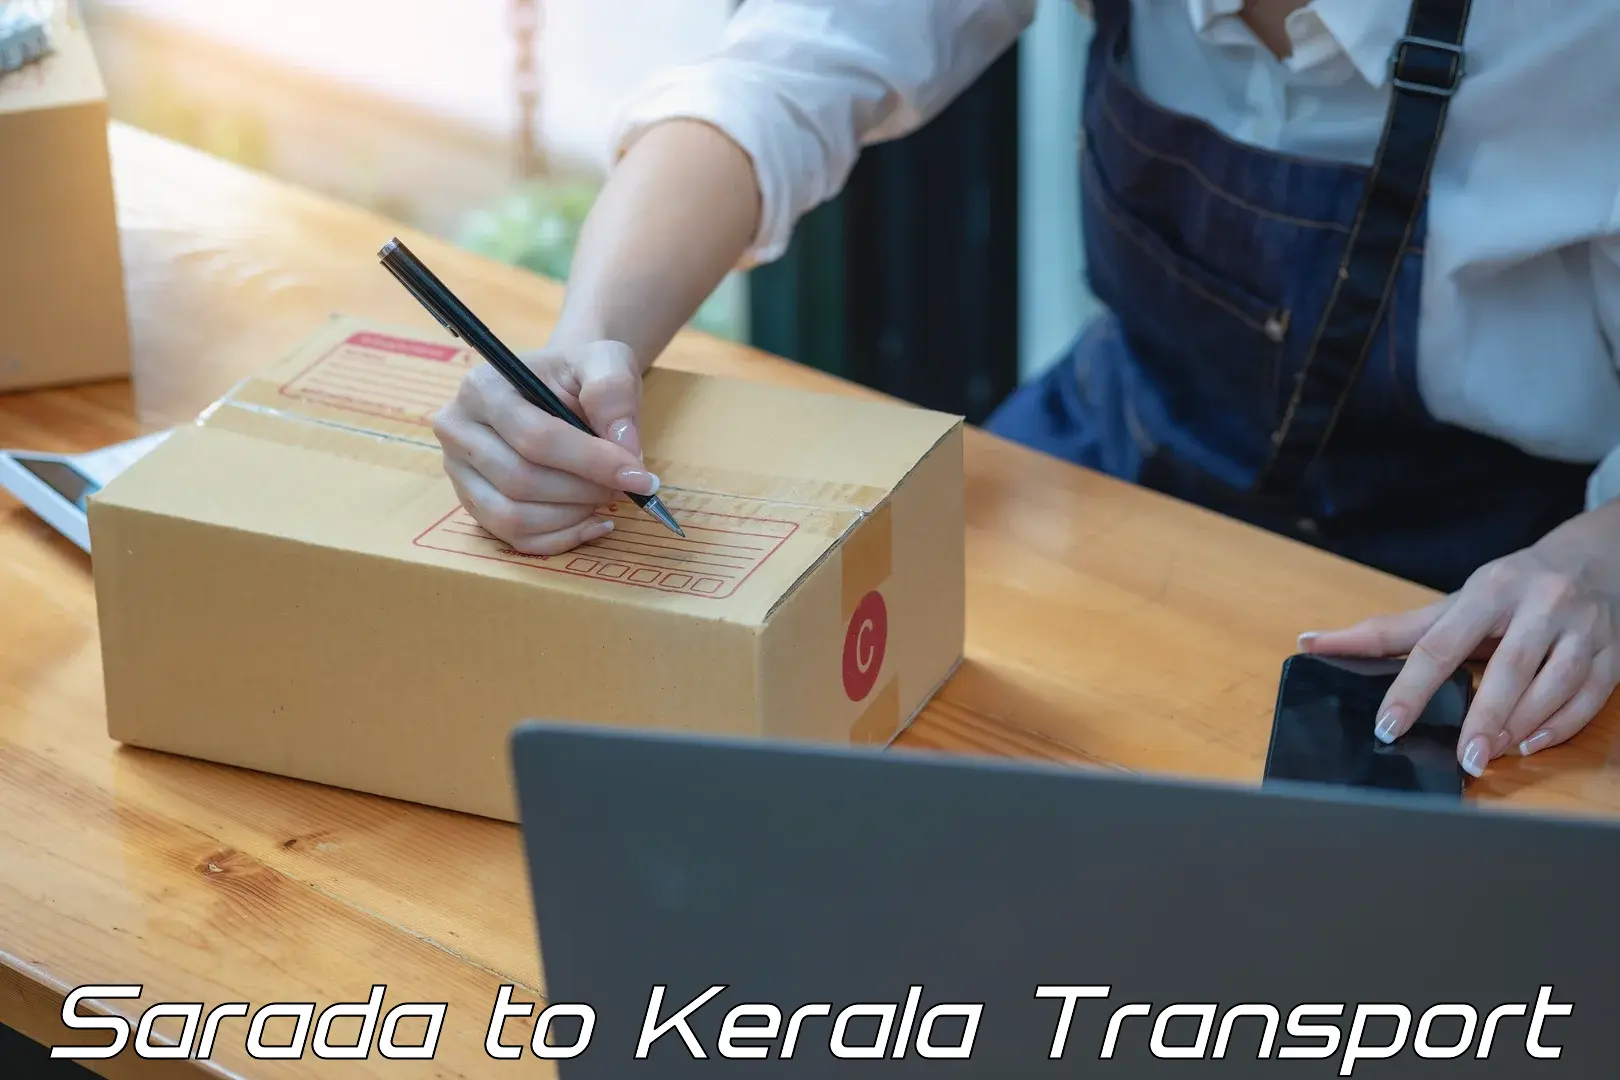 Pick up transport service Sarada to Kerala